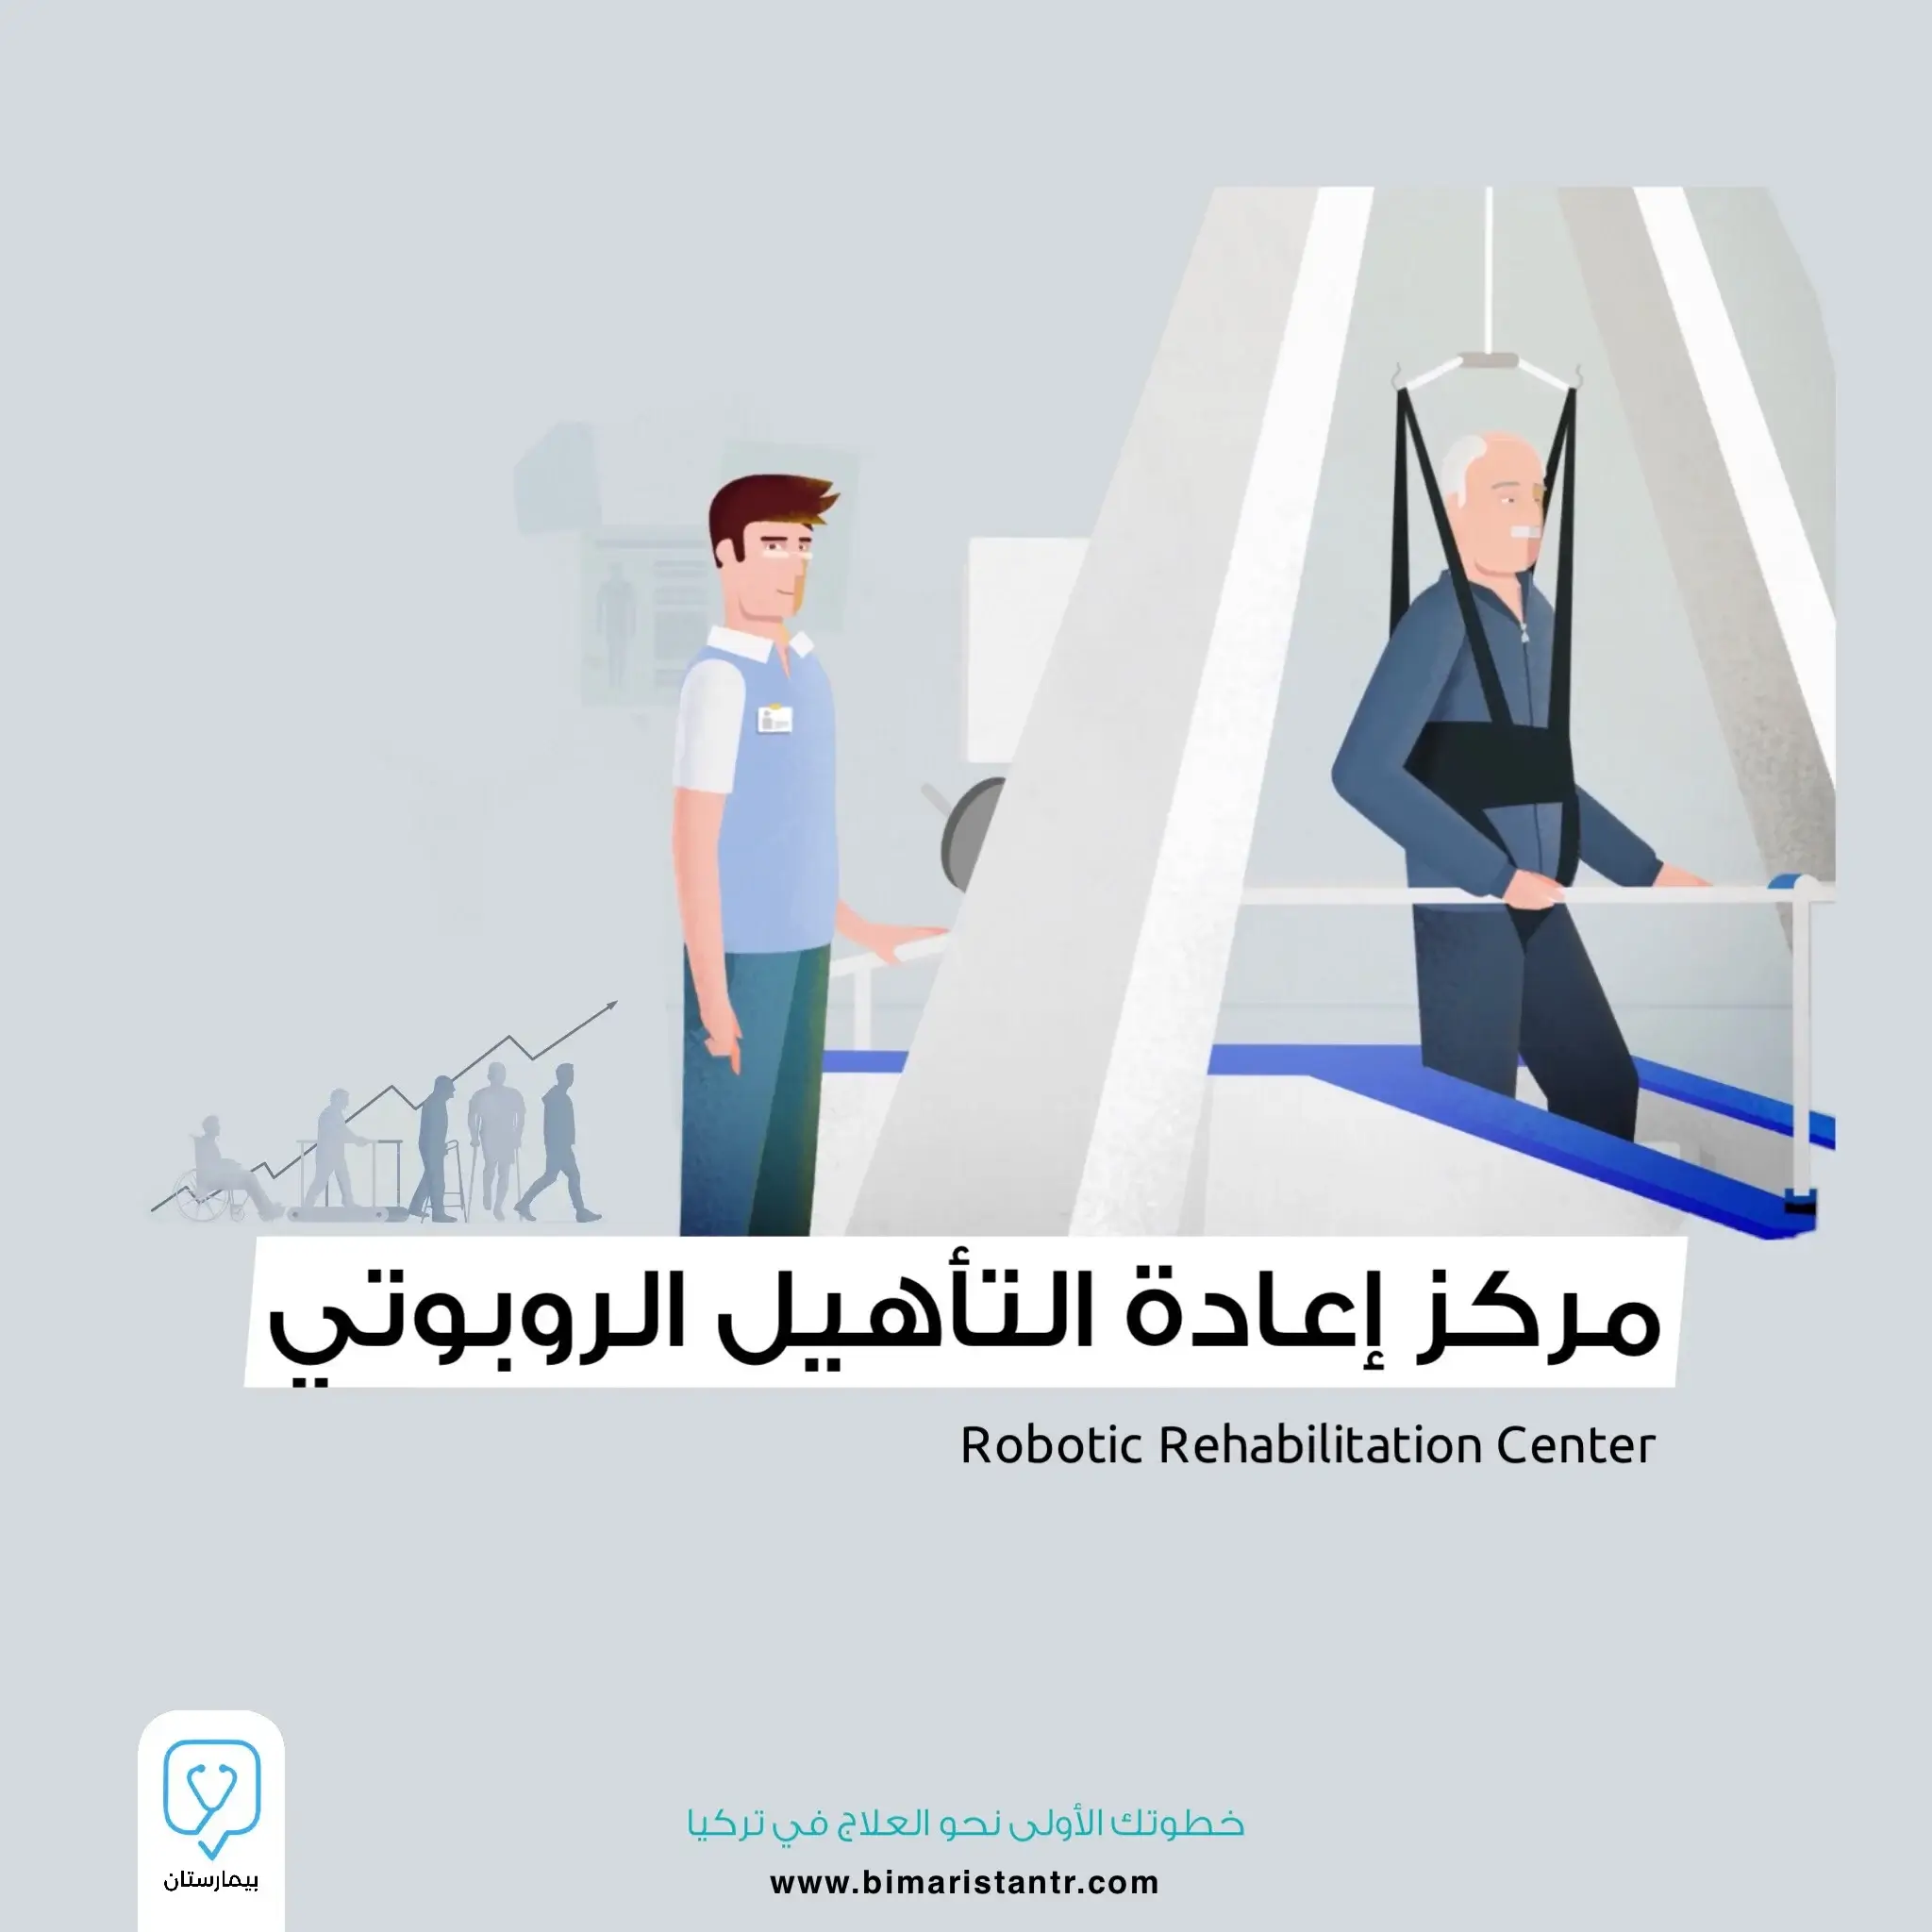 Robotic Rehabilitation Center